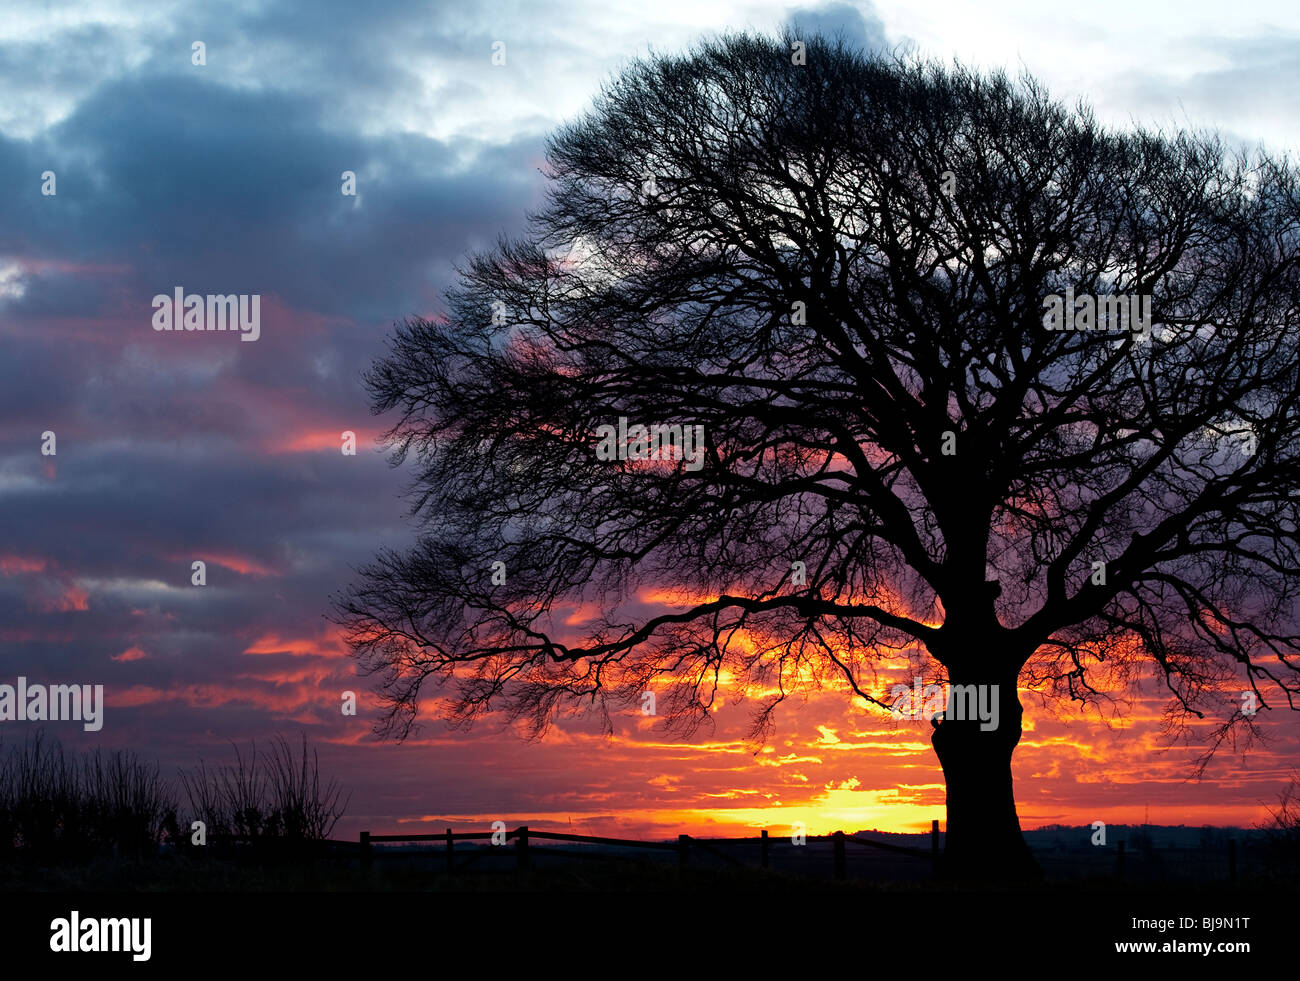 Silhouette einer Buche gegen eine feurige winter Sonnenaufgang. Shotteswell, Warwickshire, England Stockfoto